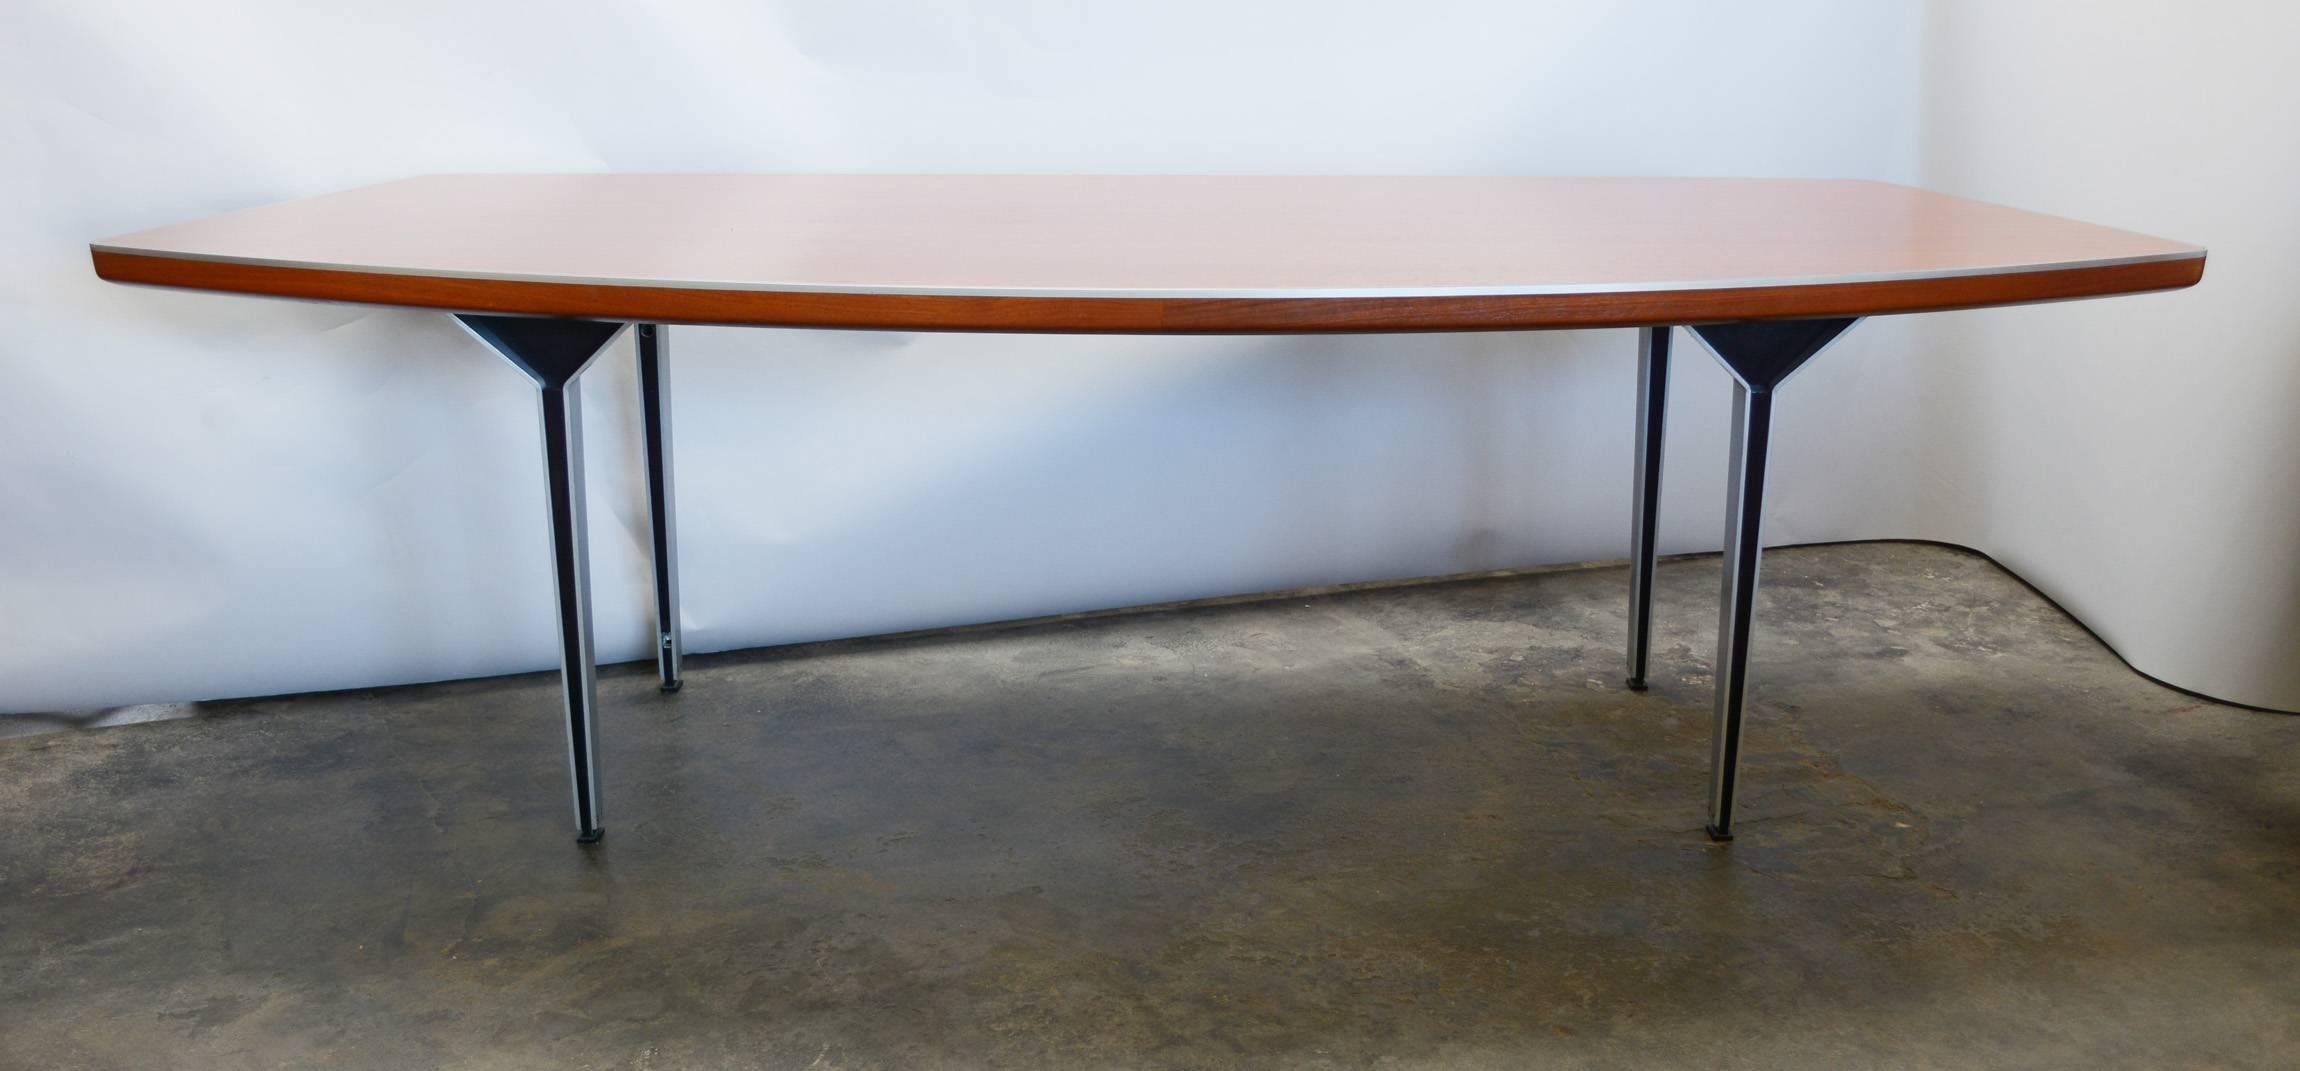 Dieser Schreibtisch ist wahrscheinlich eine Sonderanfertigung. Die architektonischen Aluminiumbeine haben in der Mitte schwarz eloxiertes Aluminium, das am unteren Ende zum Gleiter wird. Die obere Kante des Schreibtisches ist mit einem Aluminiumband